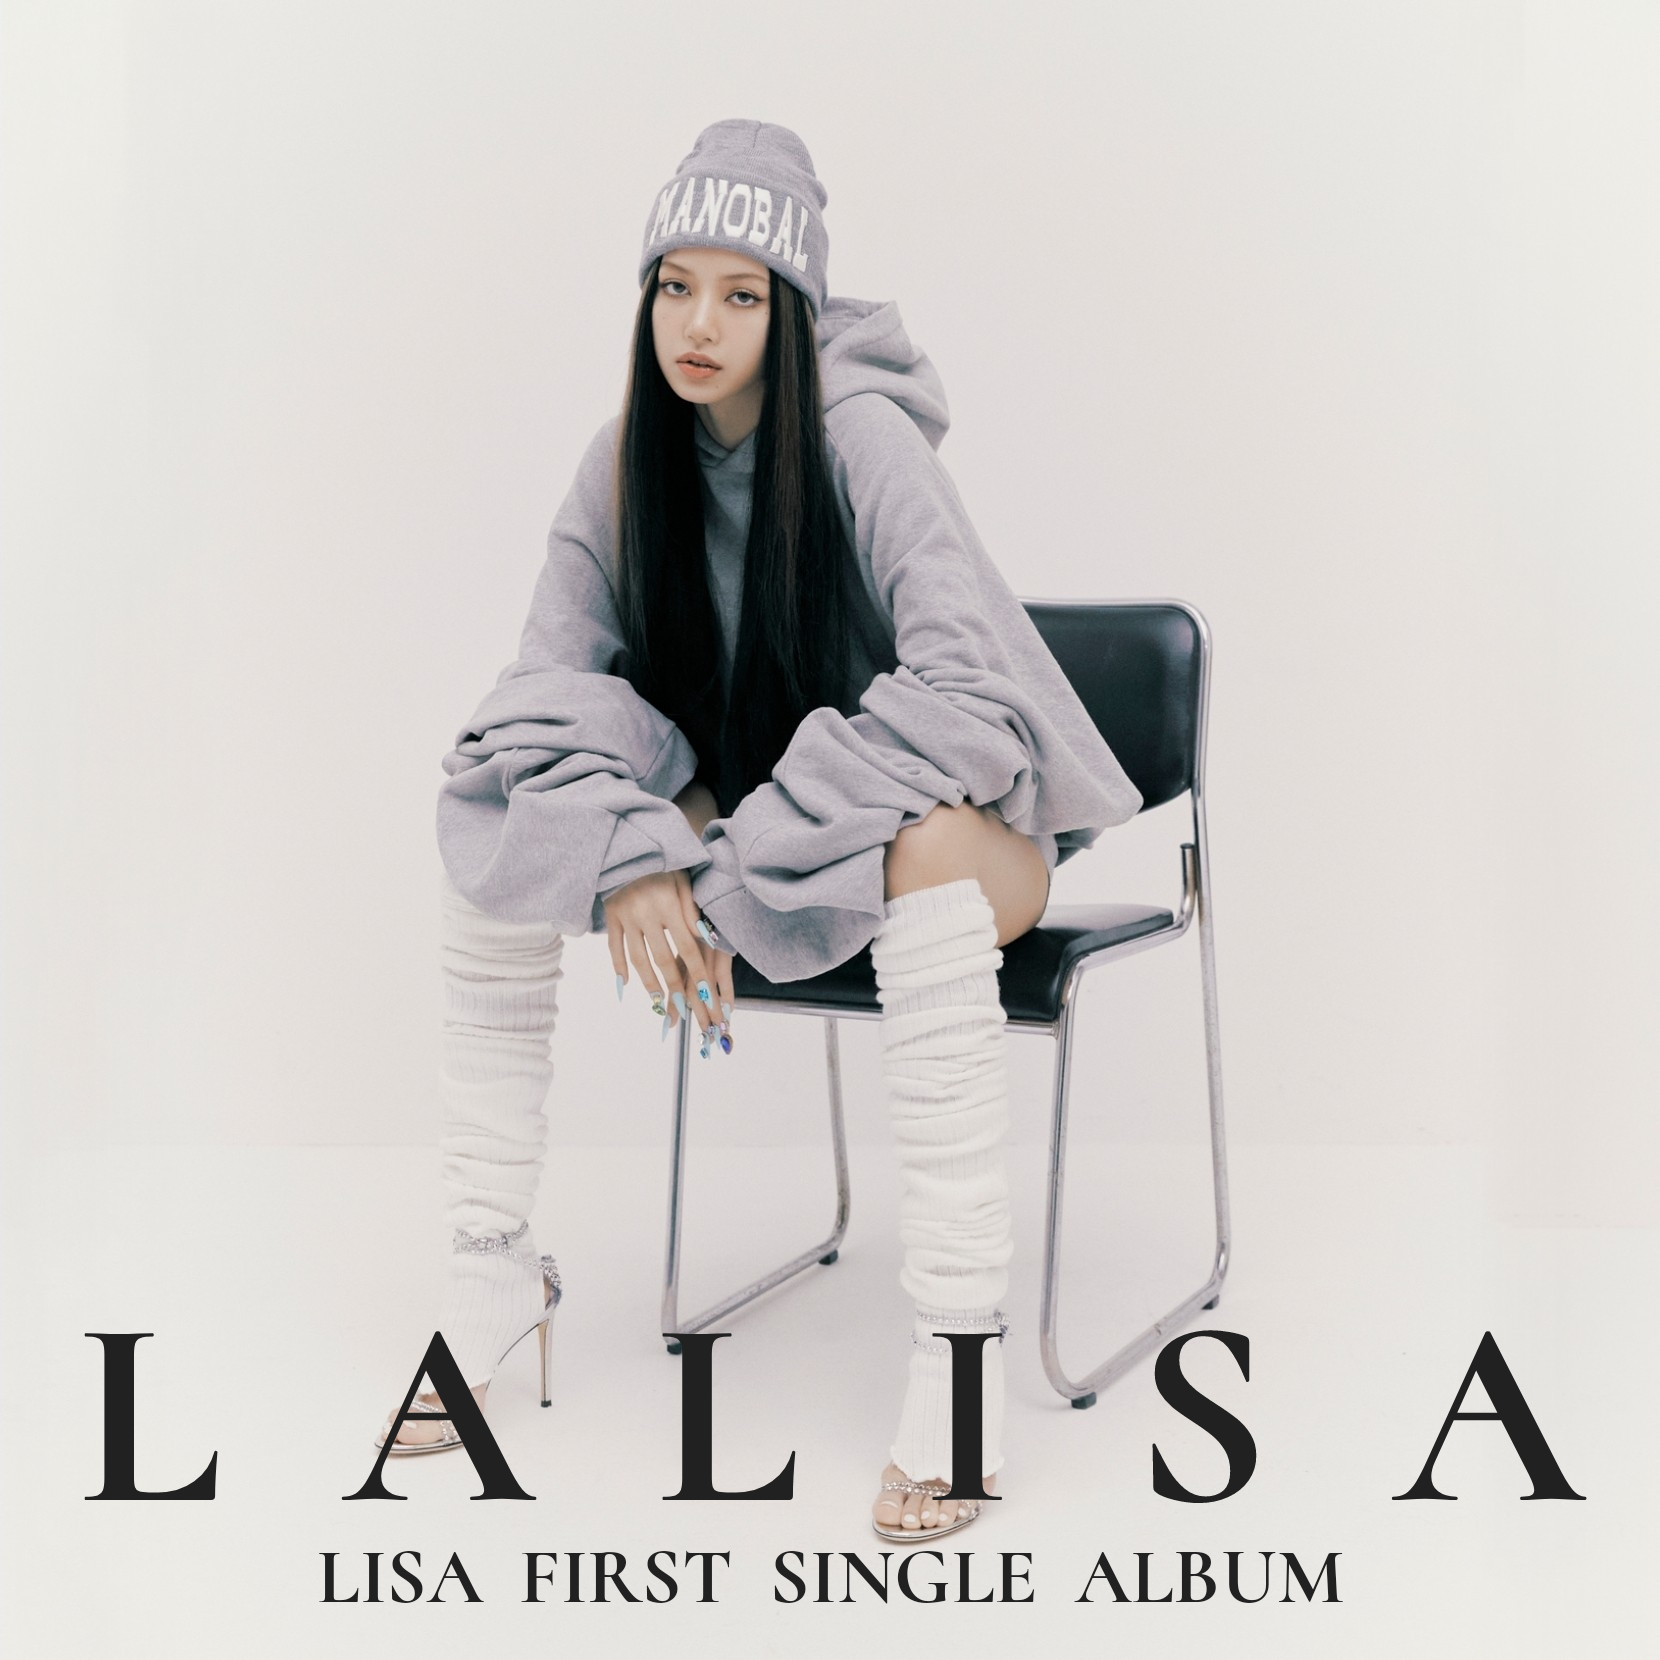 BLACKPINK 成員 LISA 首支個人歌曲《LALISA》累計獲得 103 個不同地區 ITUNES 第一位